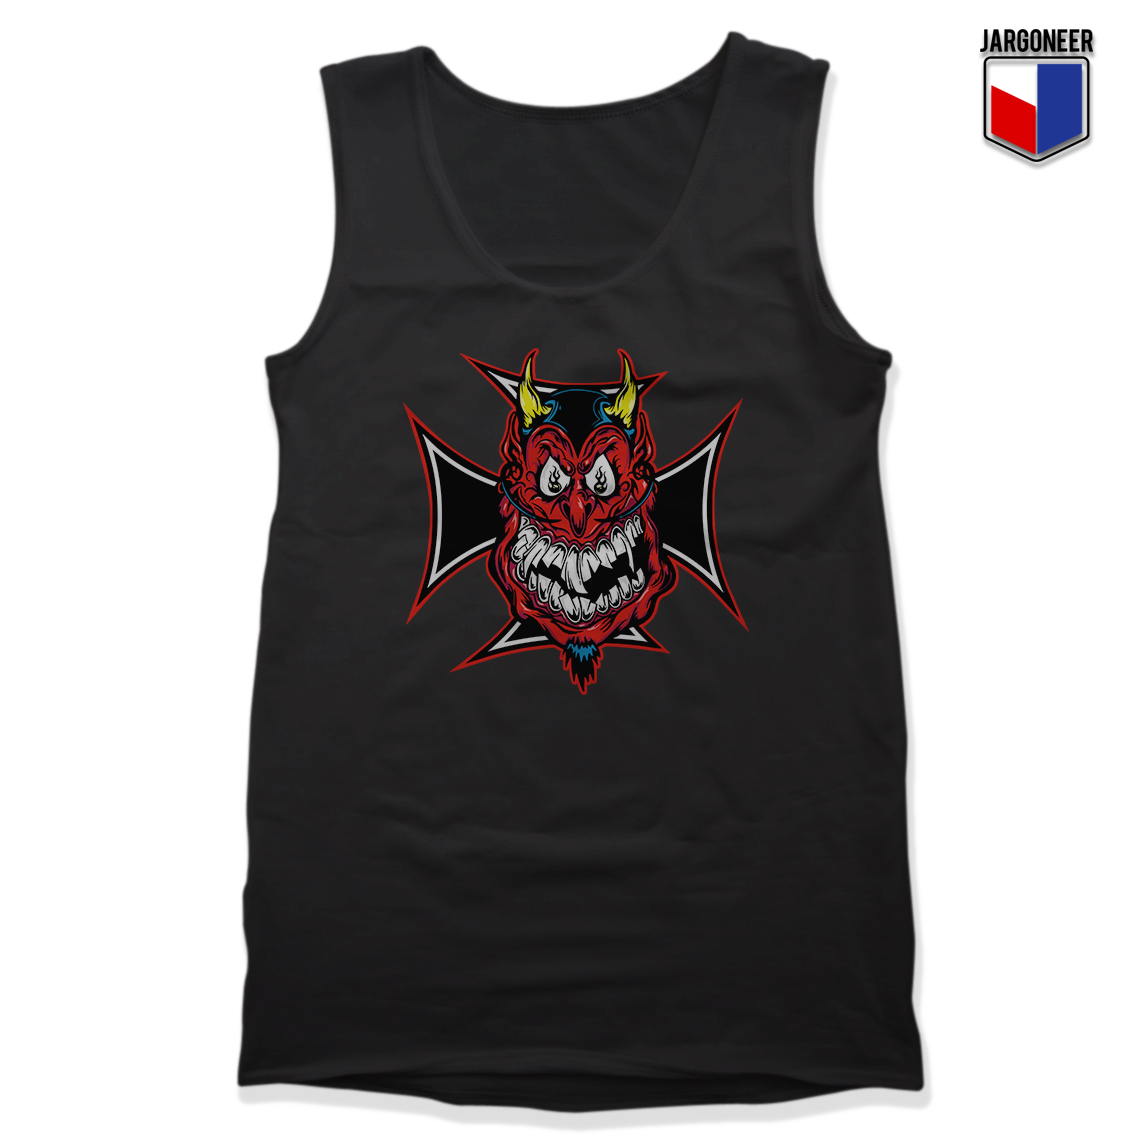 Chopper Devil Black Tank - Shop Unique Graphic Cool Shirt Designs